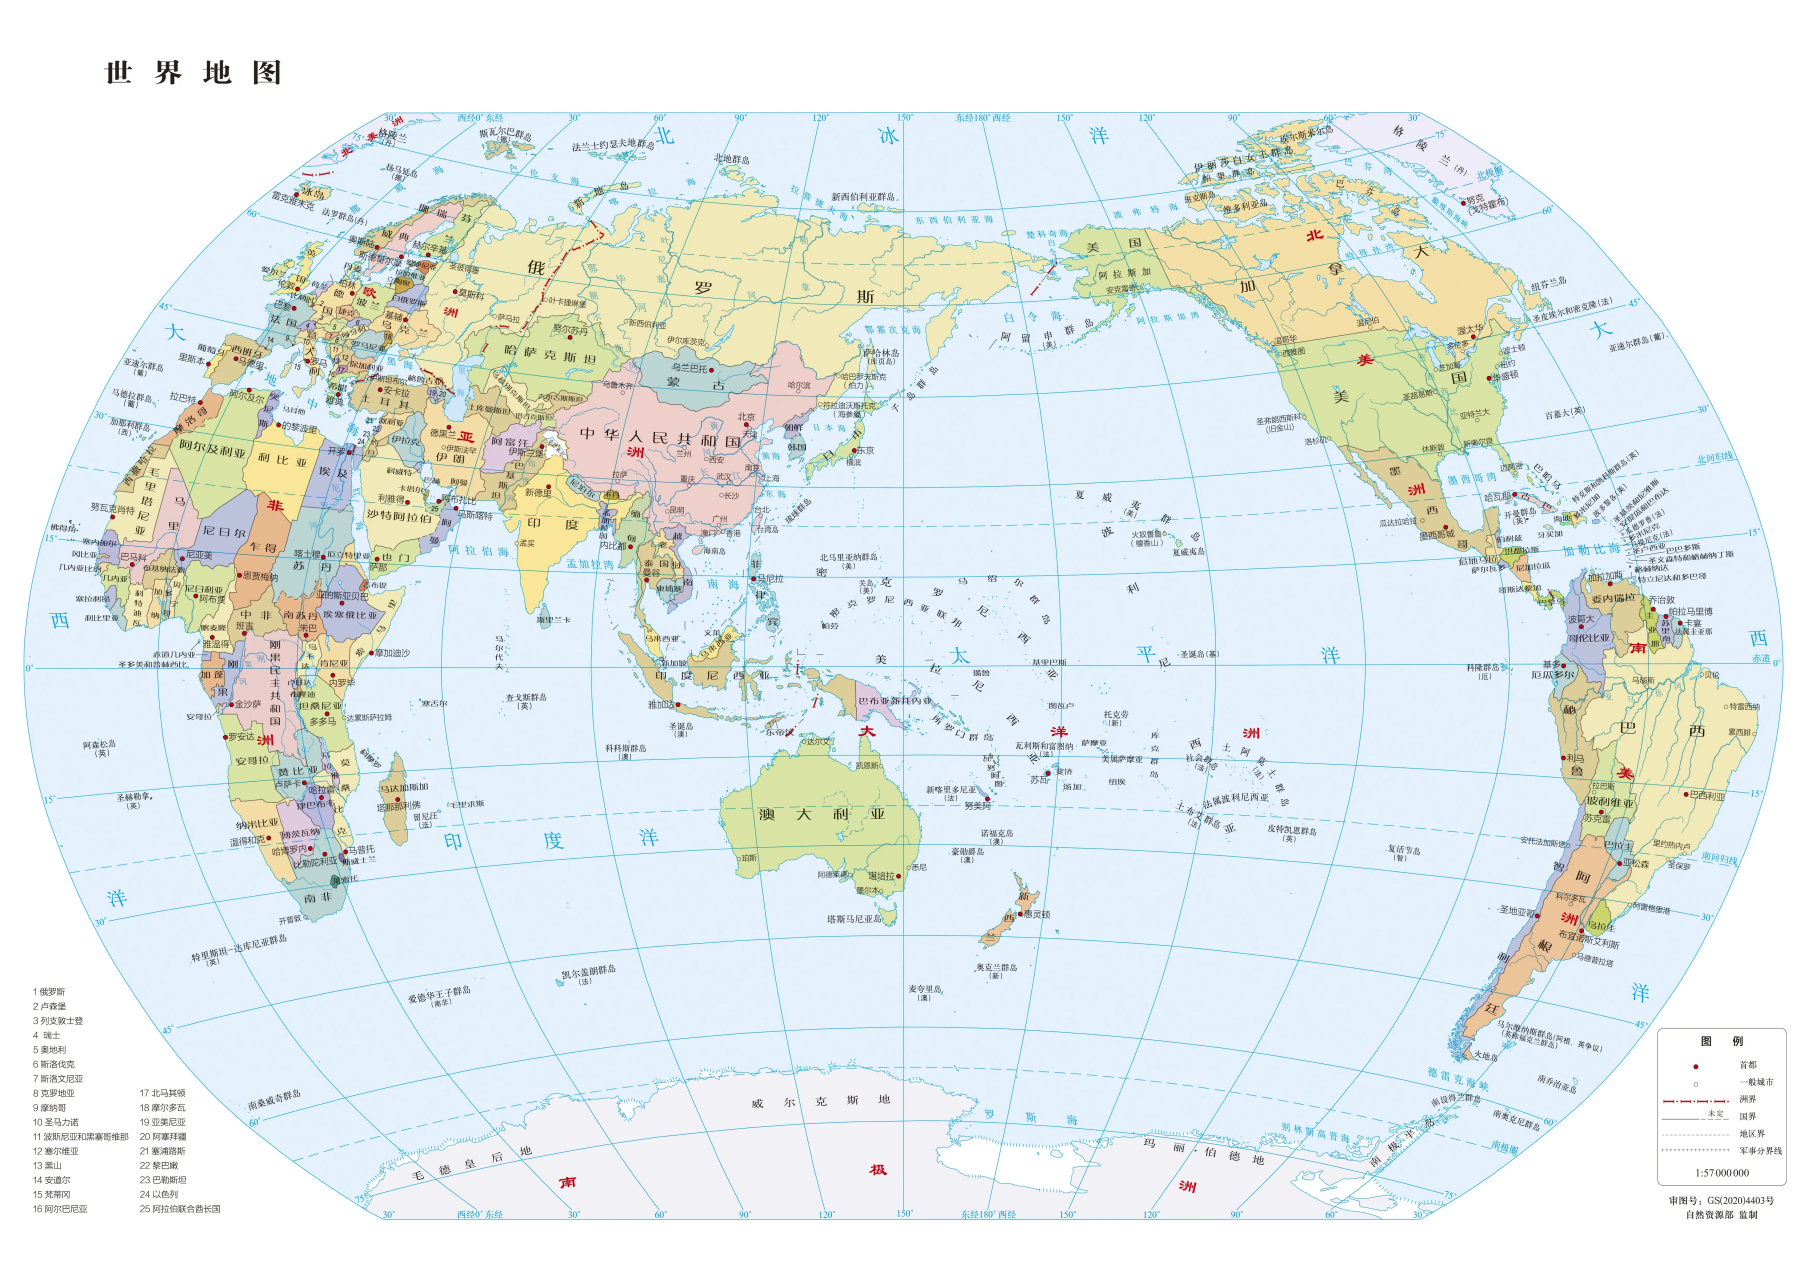 高清全球地图放大图片